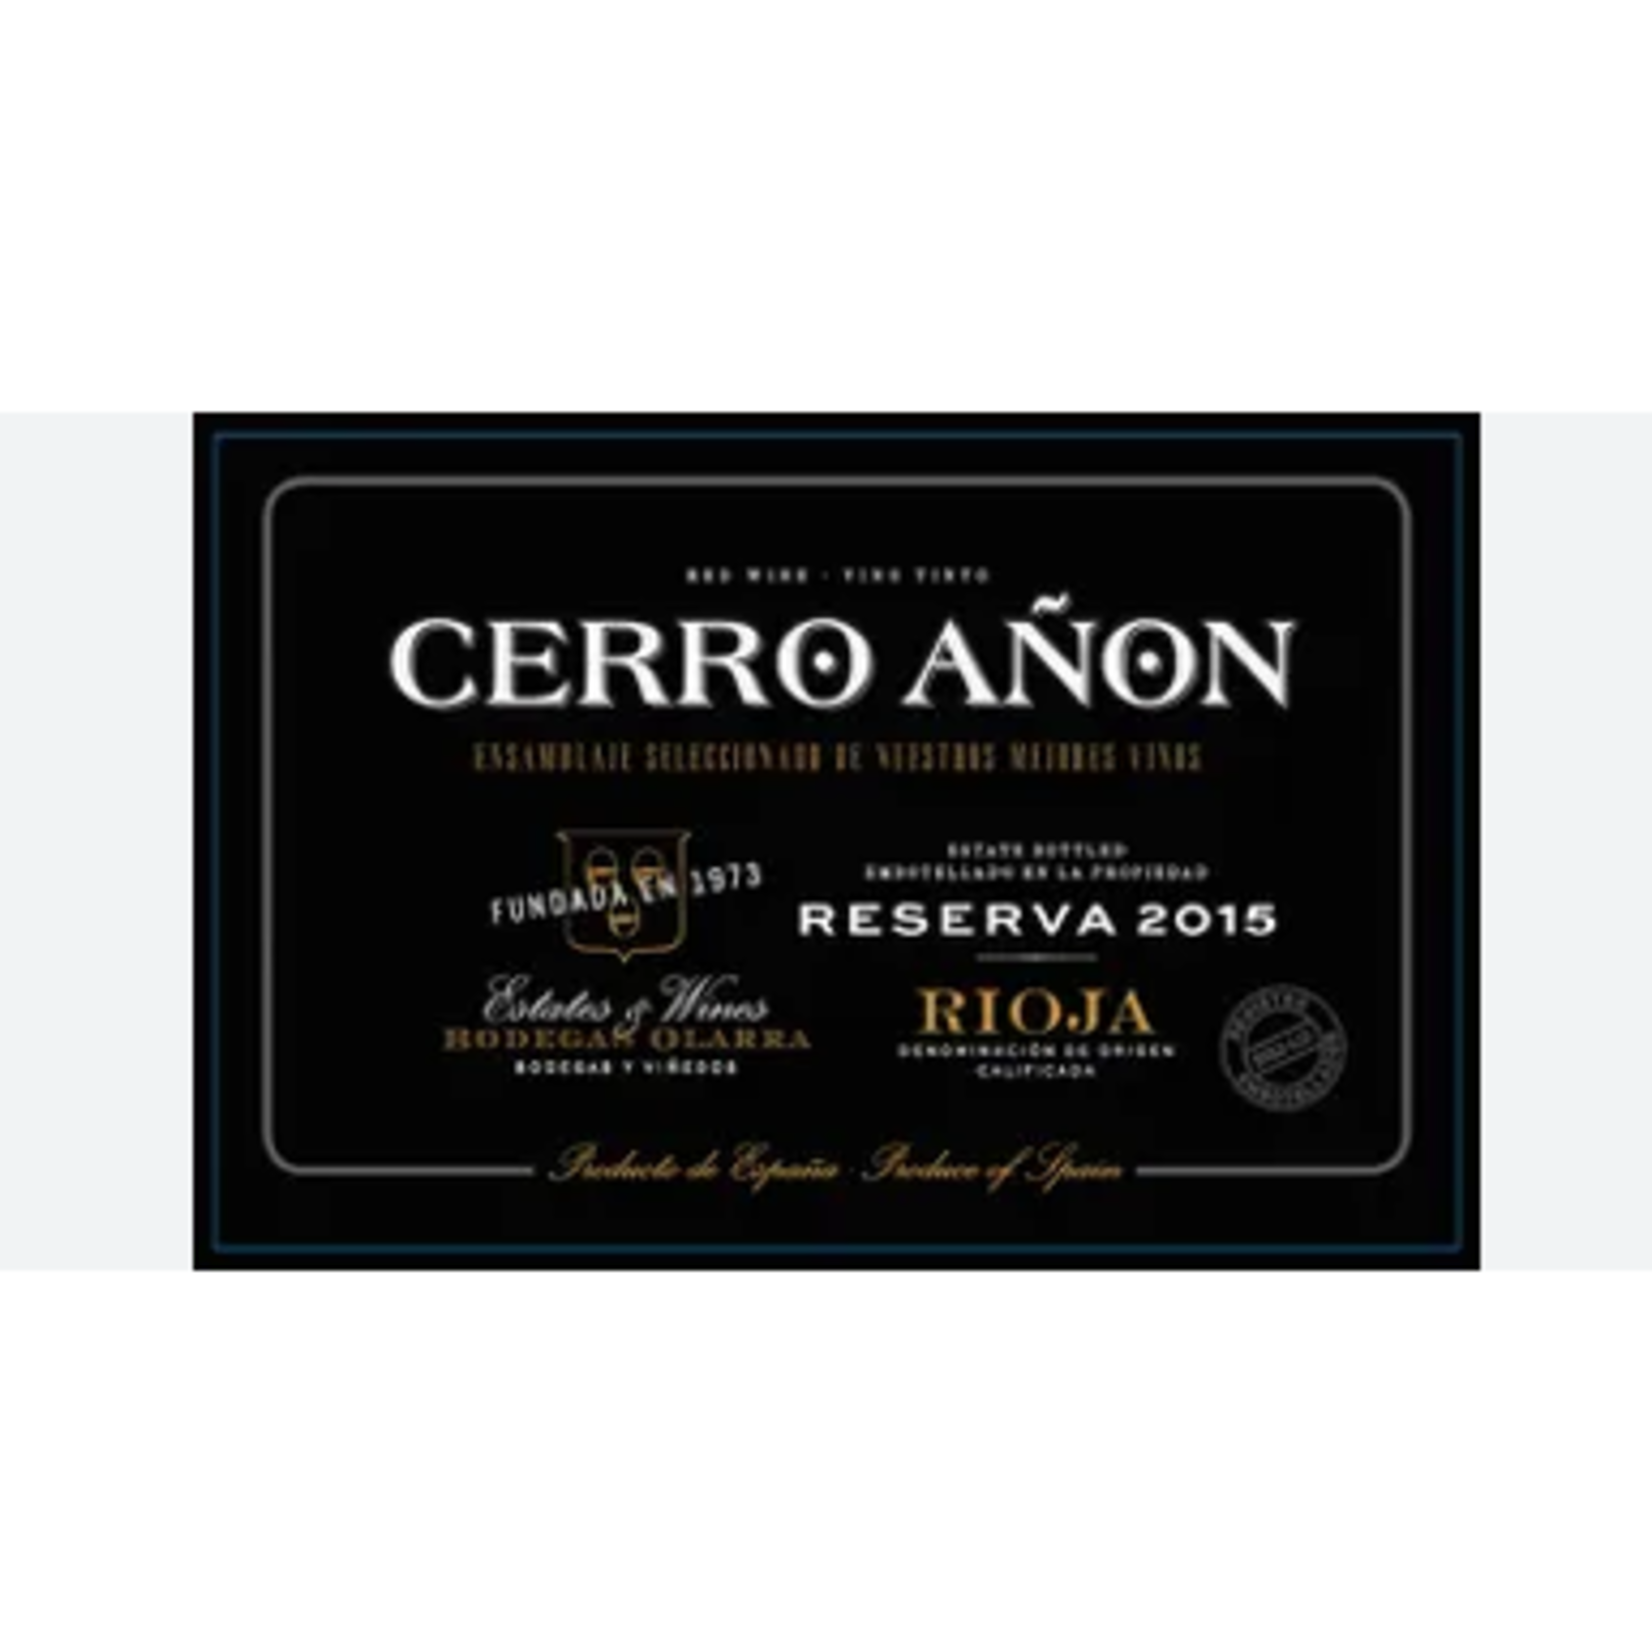 Olarra Cerro Anon Reserva Rioja 2015 Rioja, Spain 92pts-WE